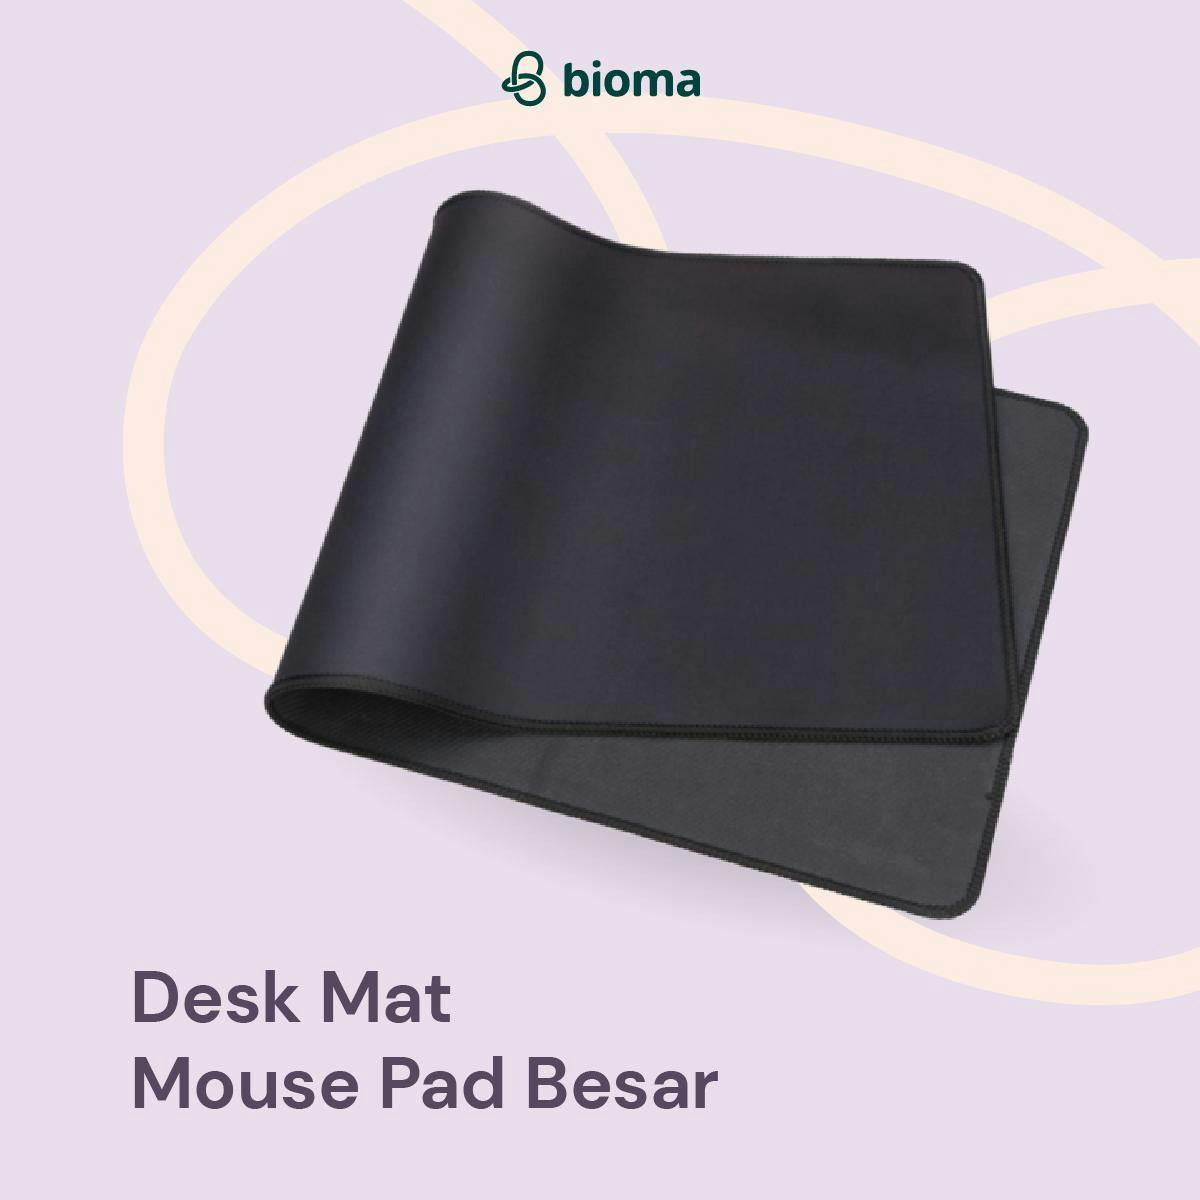 Desk Mat Mouse Pad